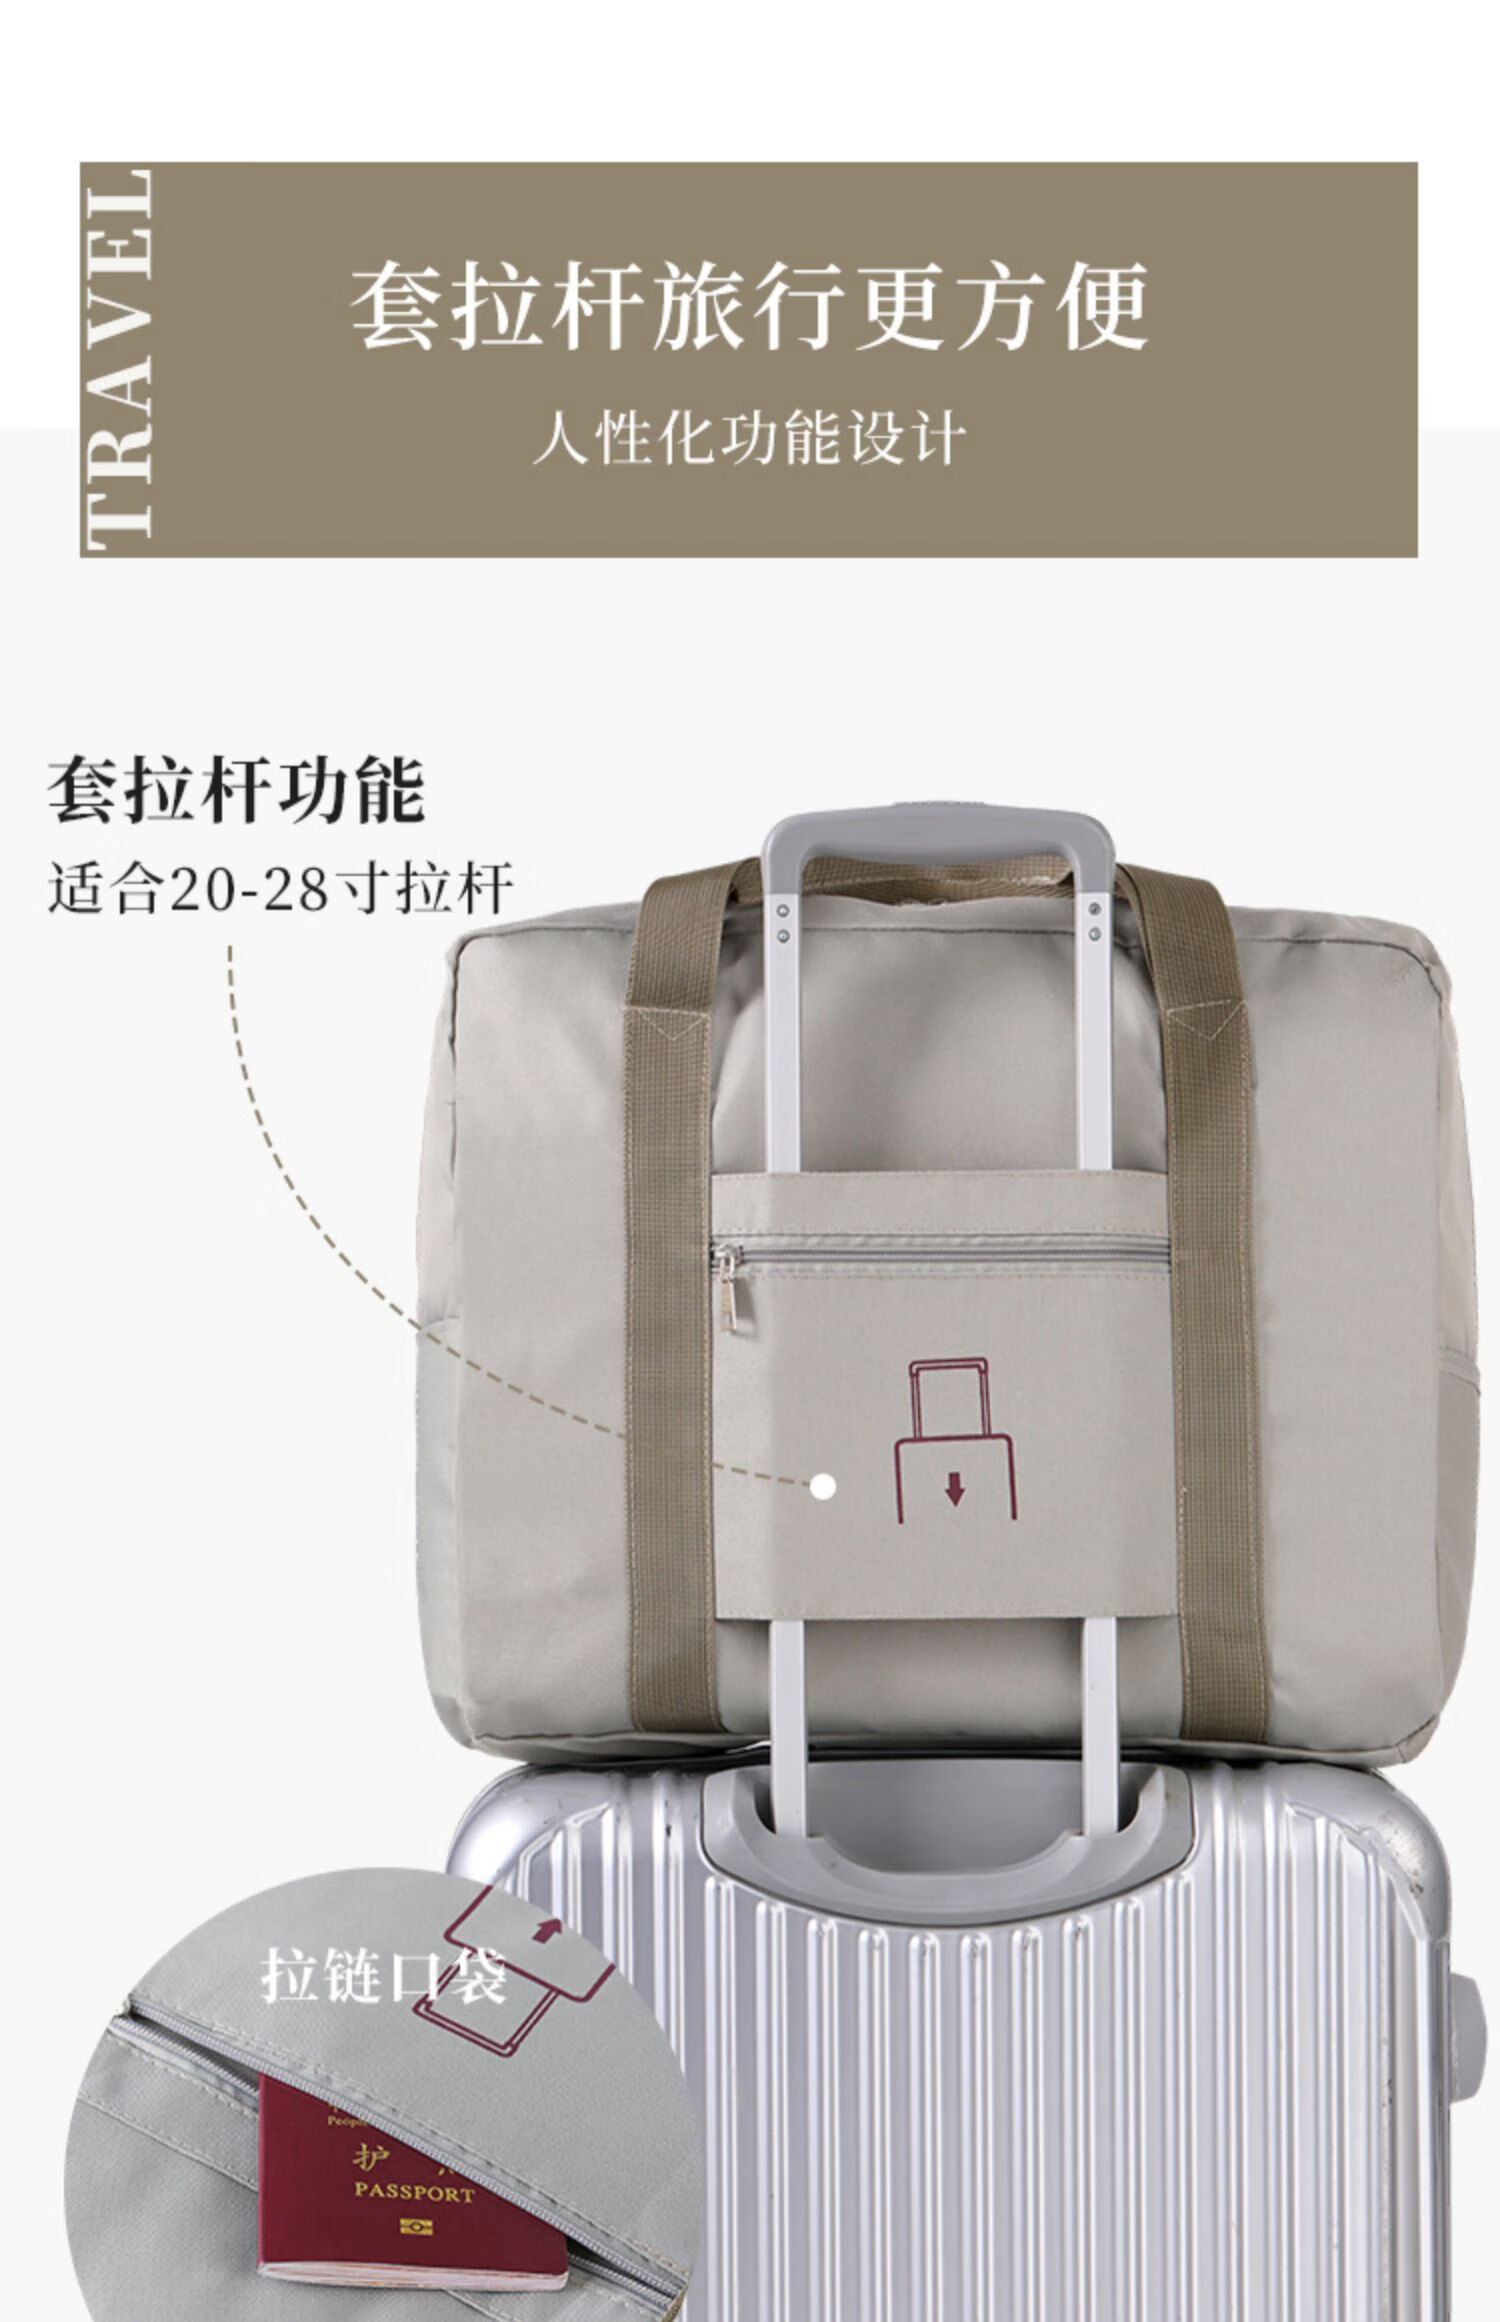 行李箱挂包行李箱上的收纳包拉杆箱上放的旅行包可折叠旅行袋便携行李